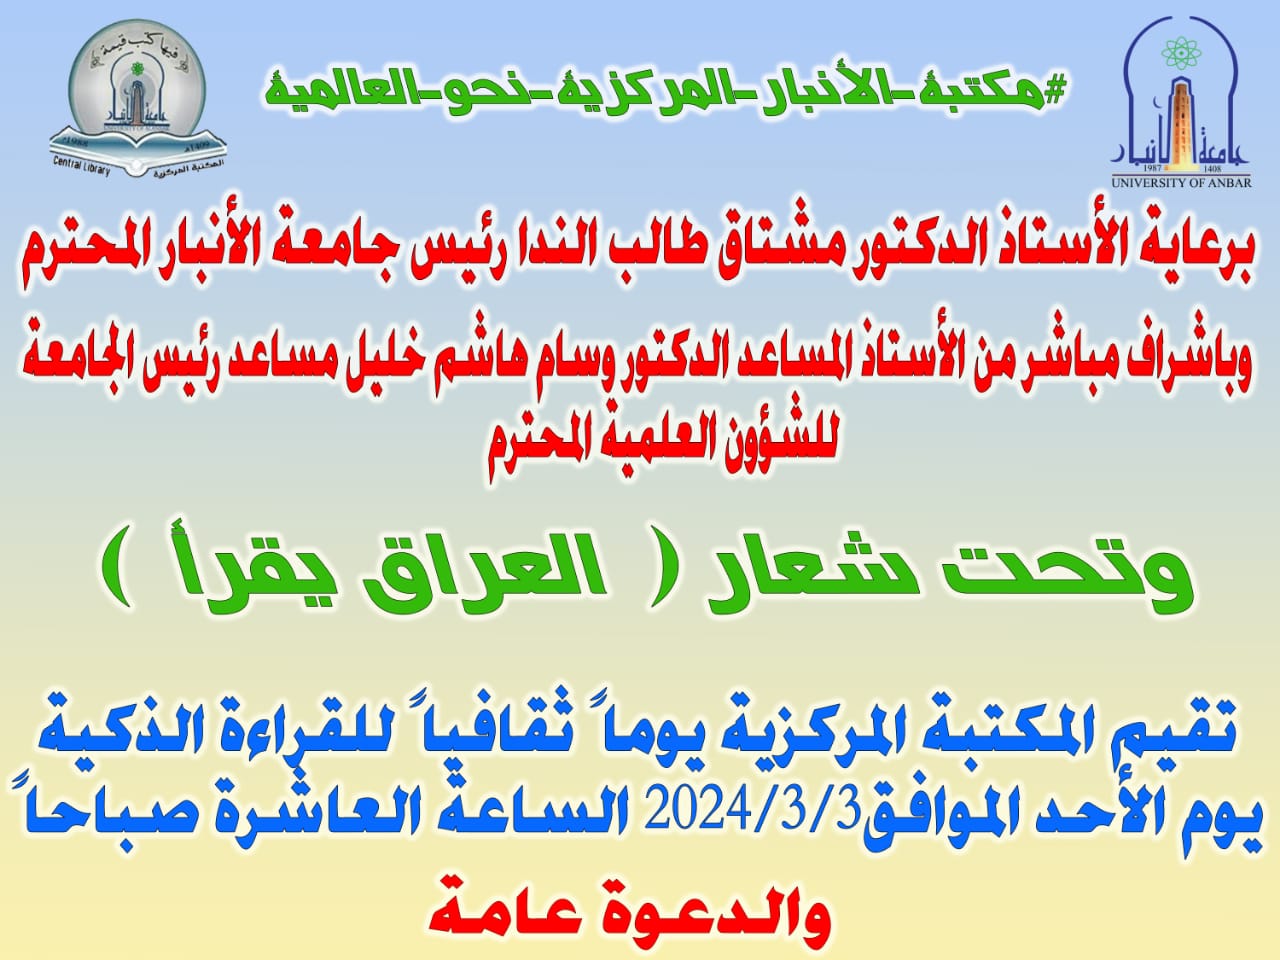 اليوم الرسمي للاحتفاء بالقراءة في العراق - جامعة الانبار